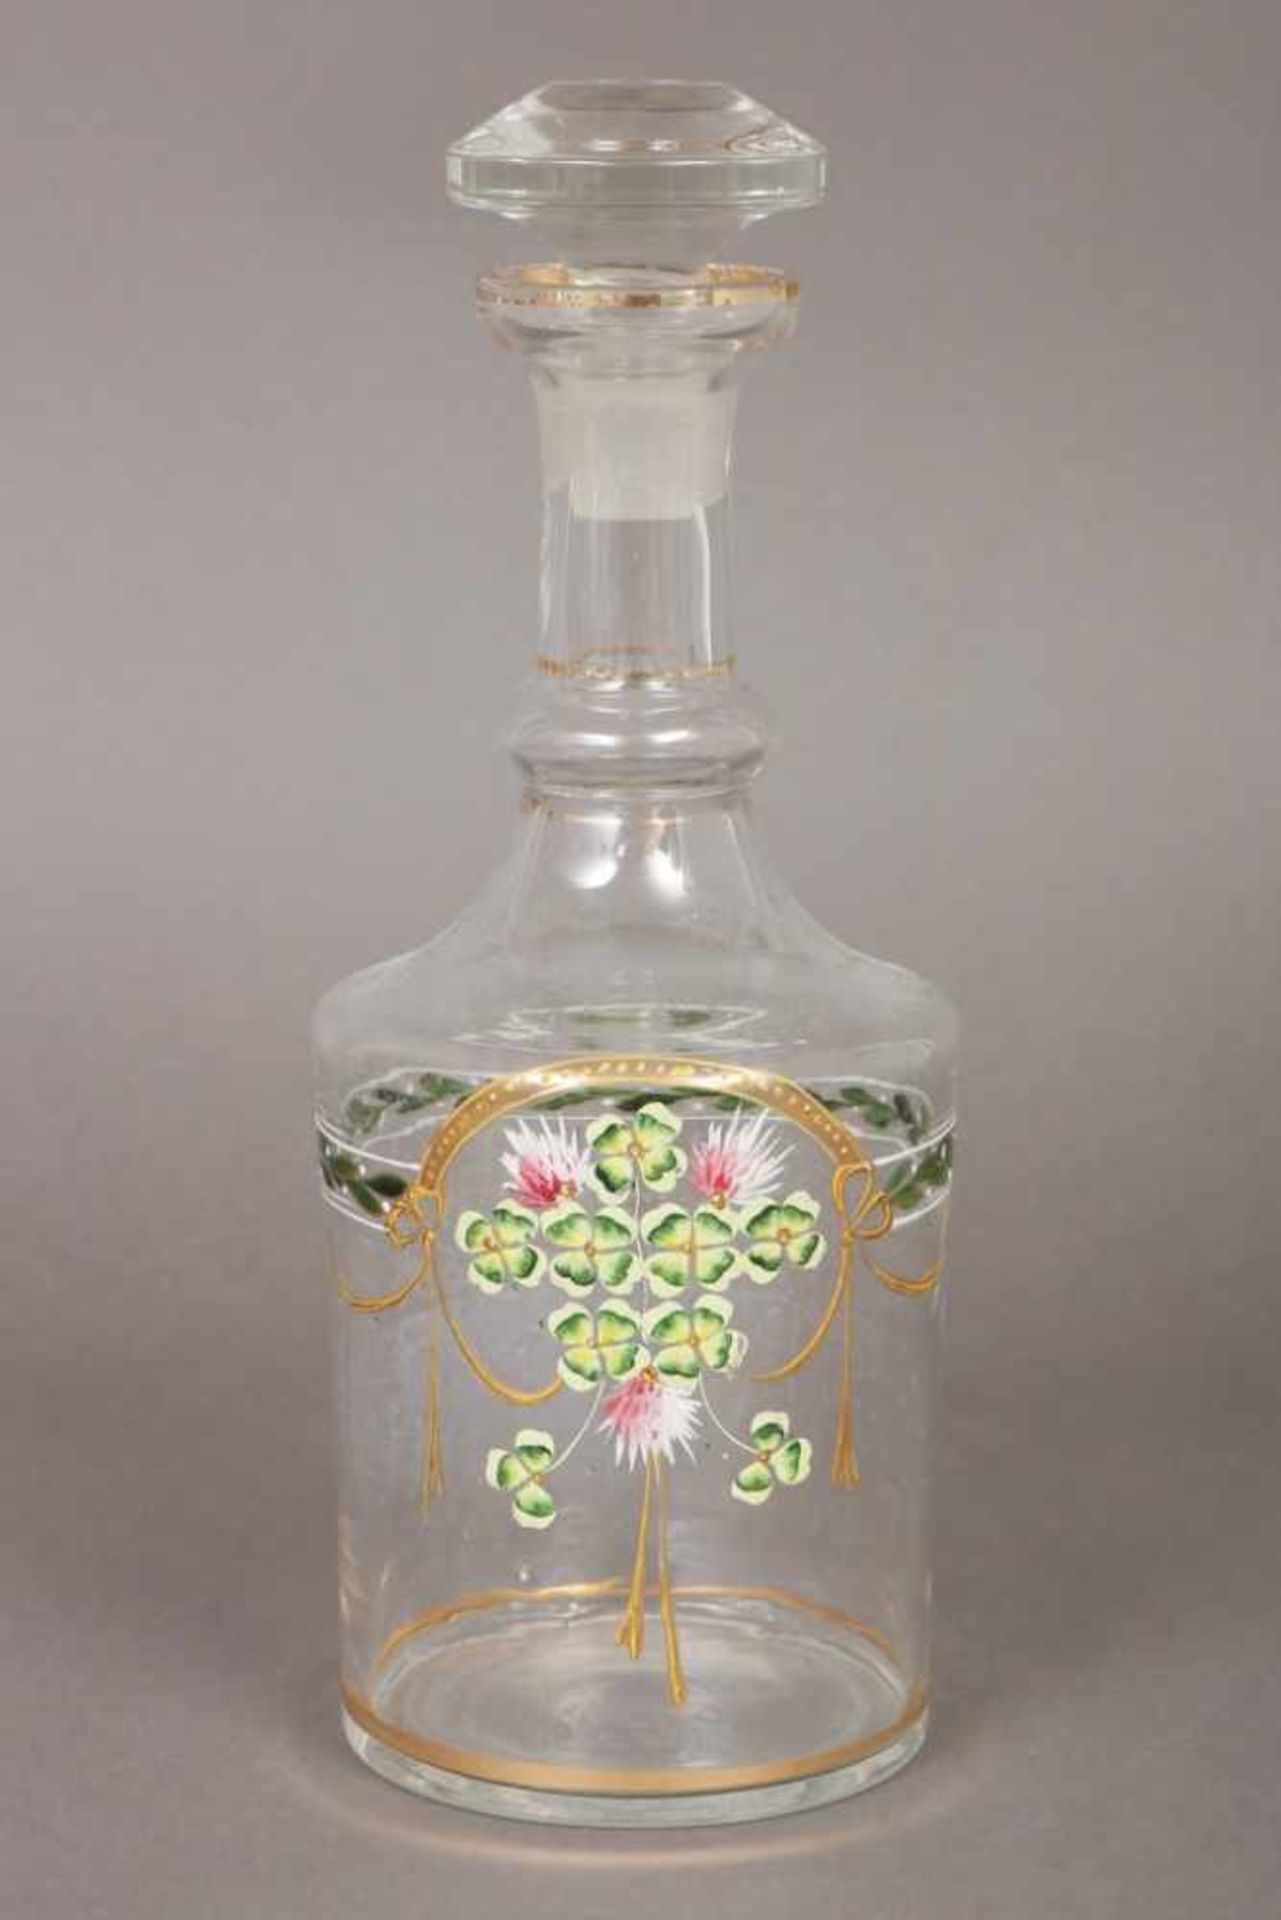 Karaffe farbloses Glas, um 1900, mit Emaillemalerei ¨Festonen mit vierblättrigen Kleeblättern¨,